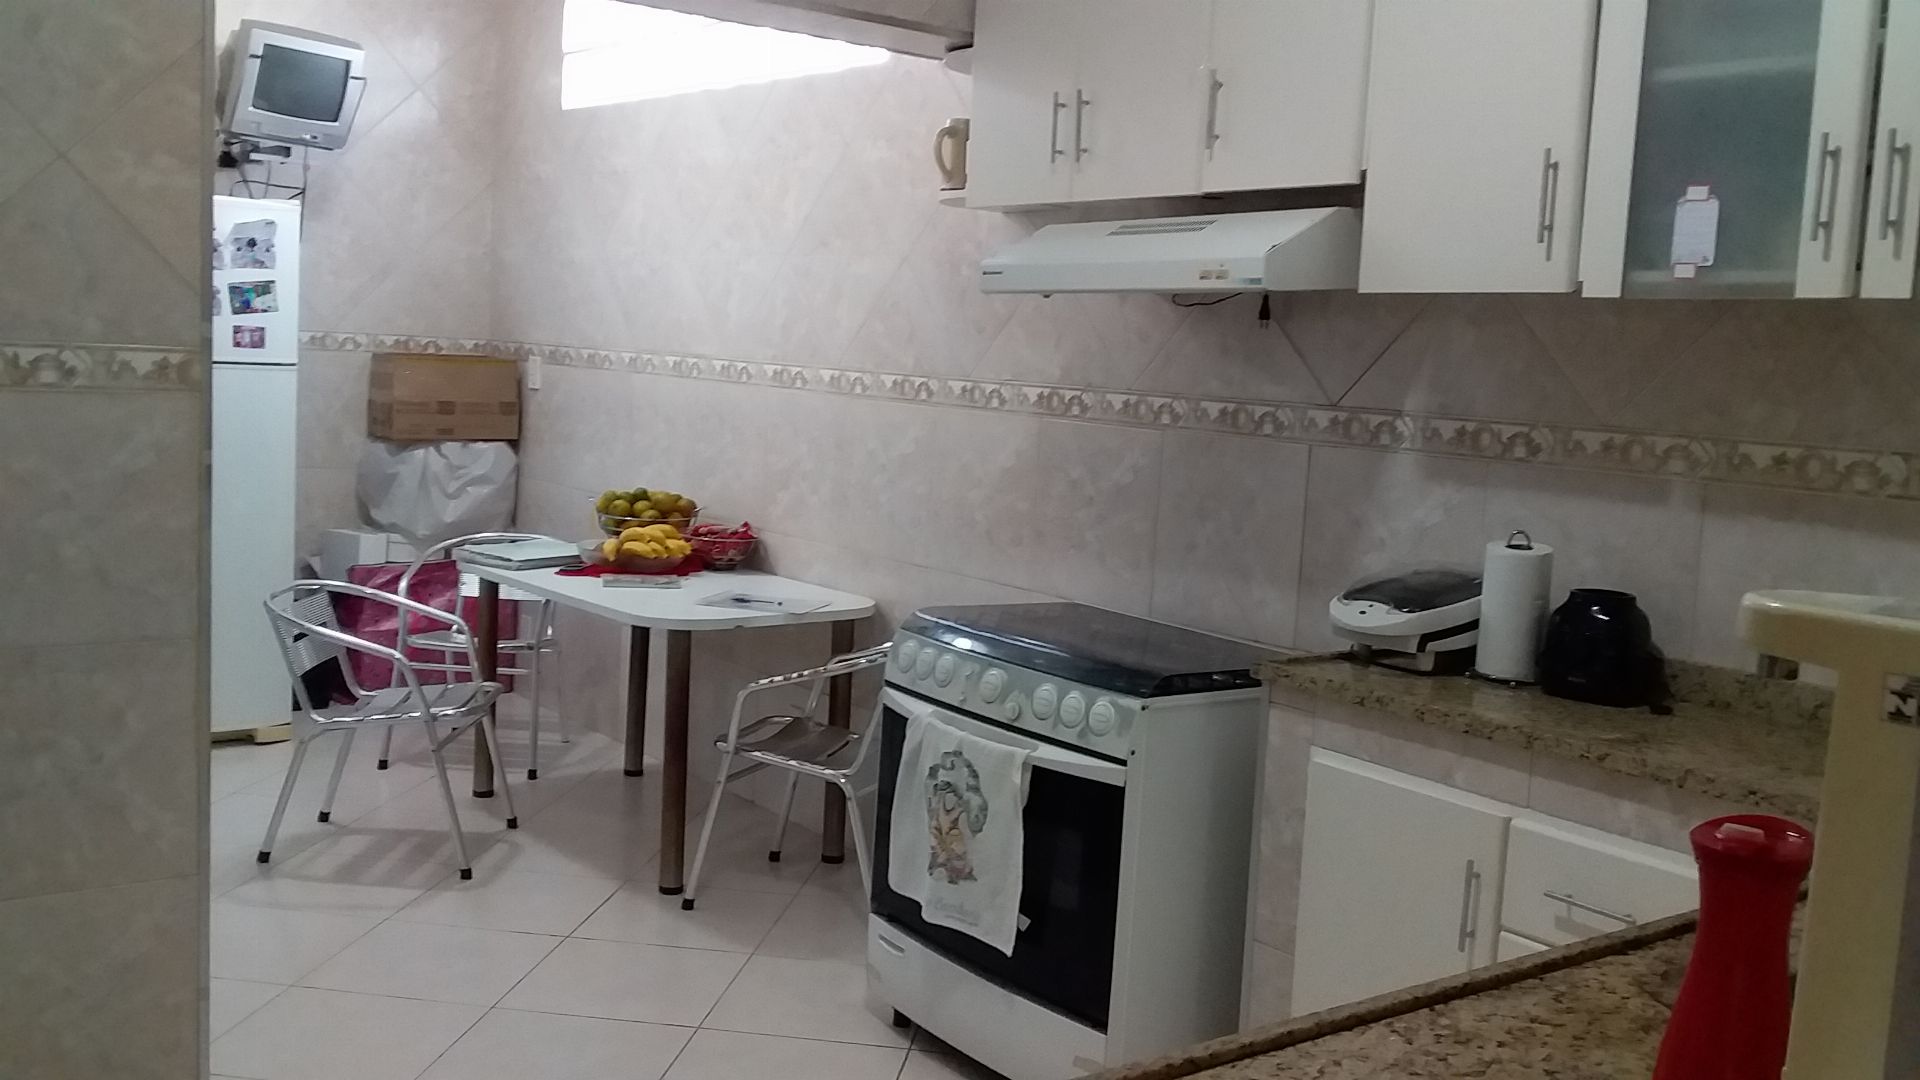 FOTO 1 - Apartamento à venda Estrada da Fontinha,Bento Ribeiro, Rio de Janeiro - R$ 340.000 - RF192 - 1